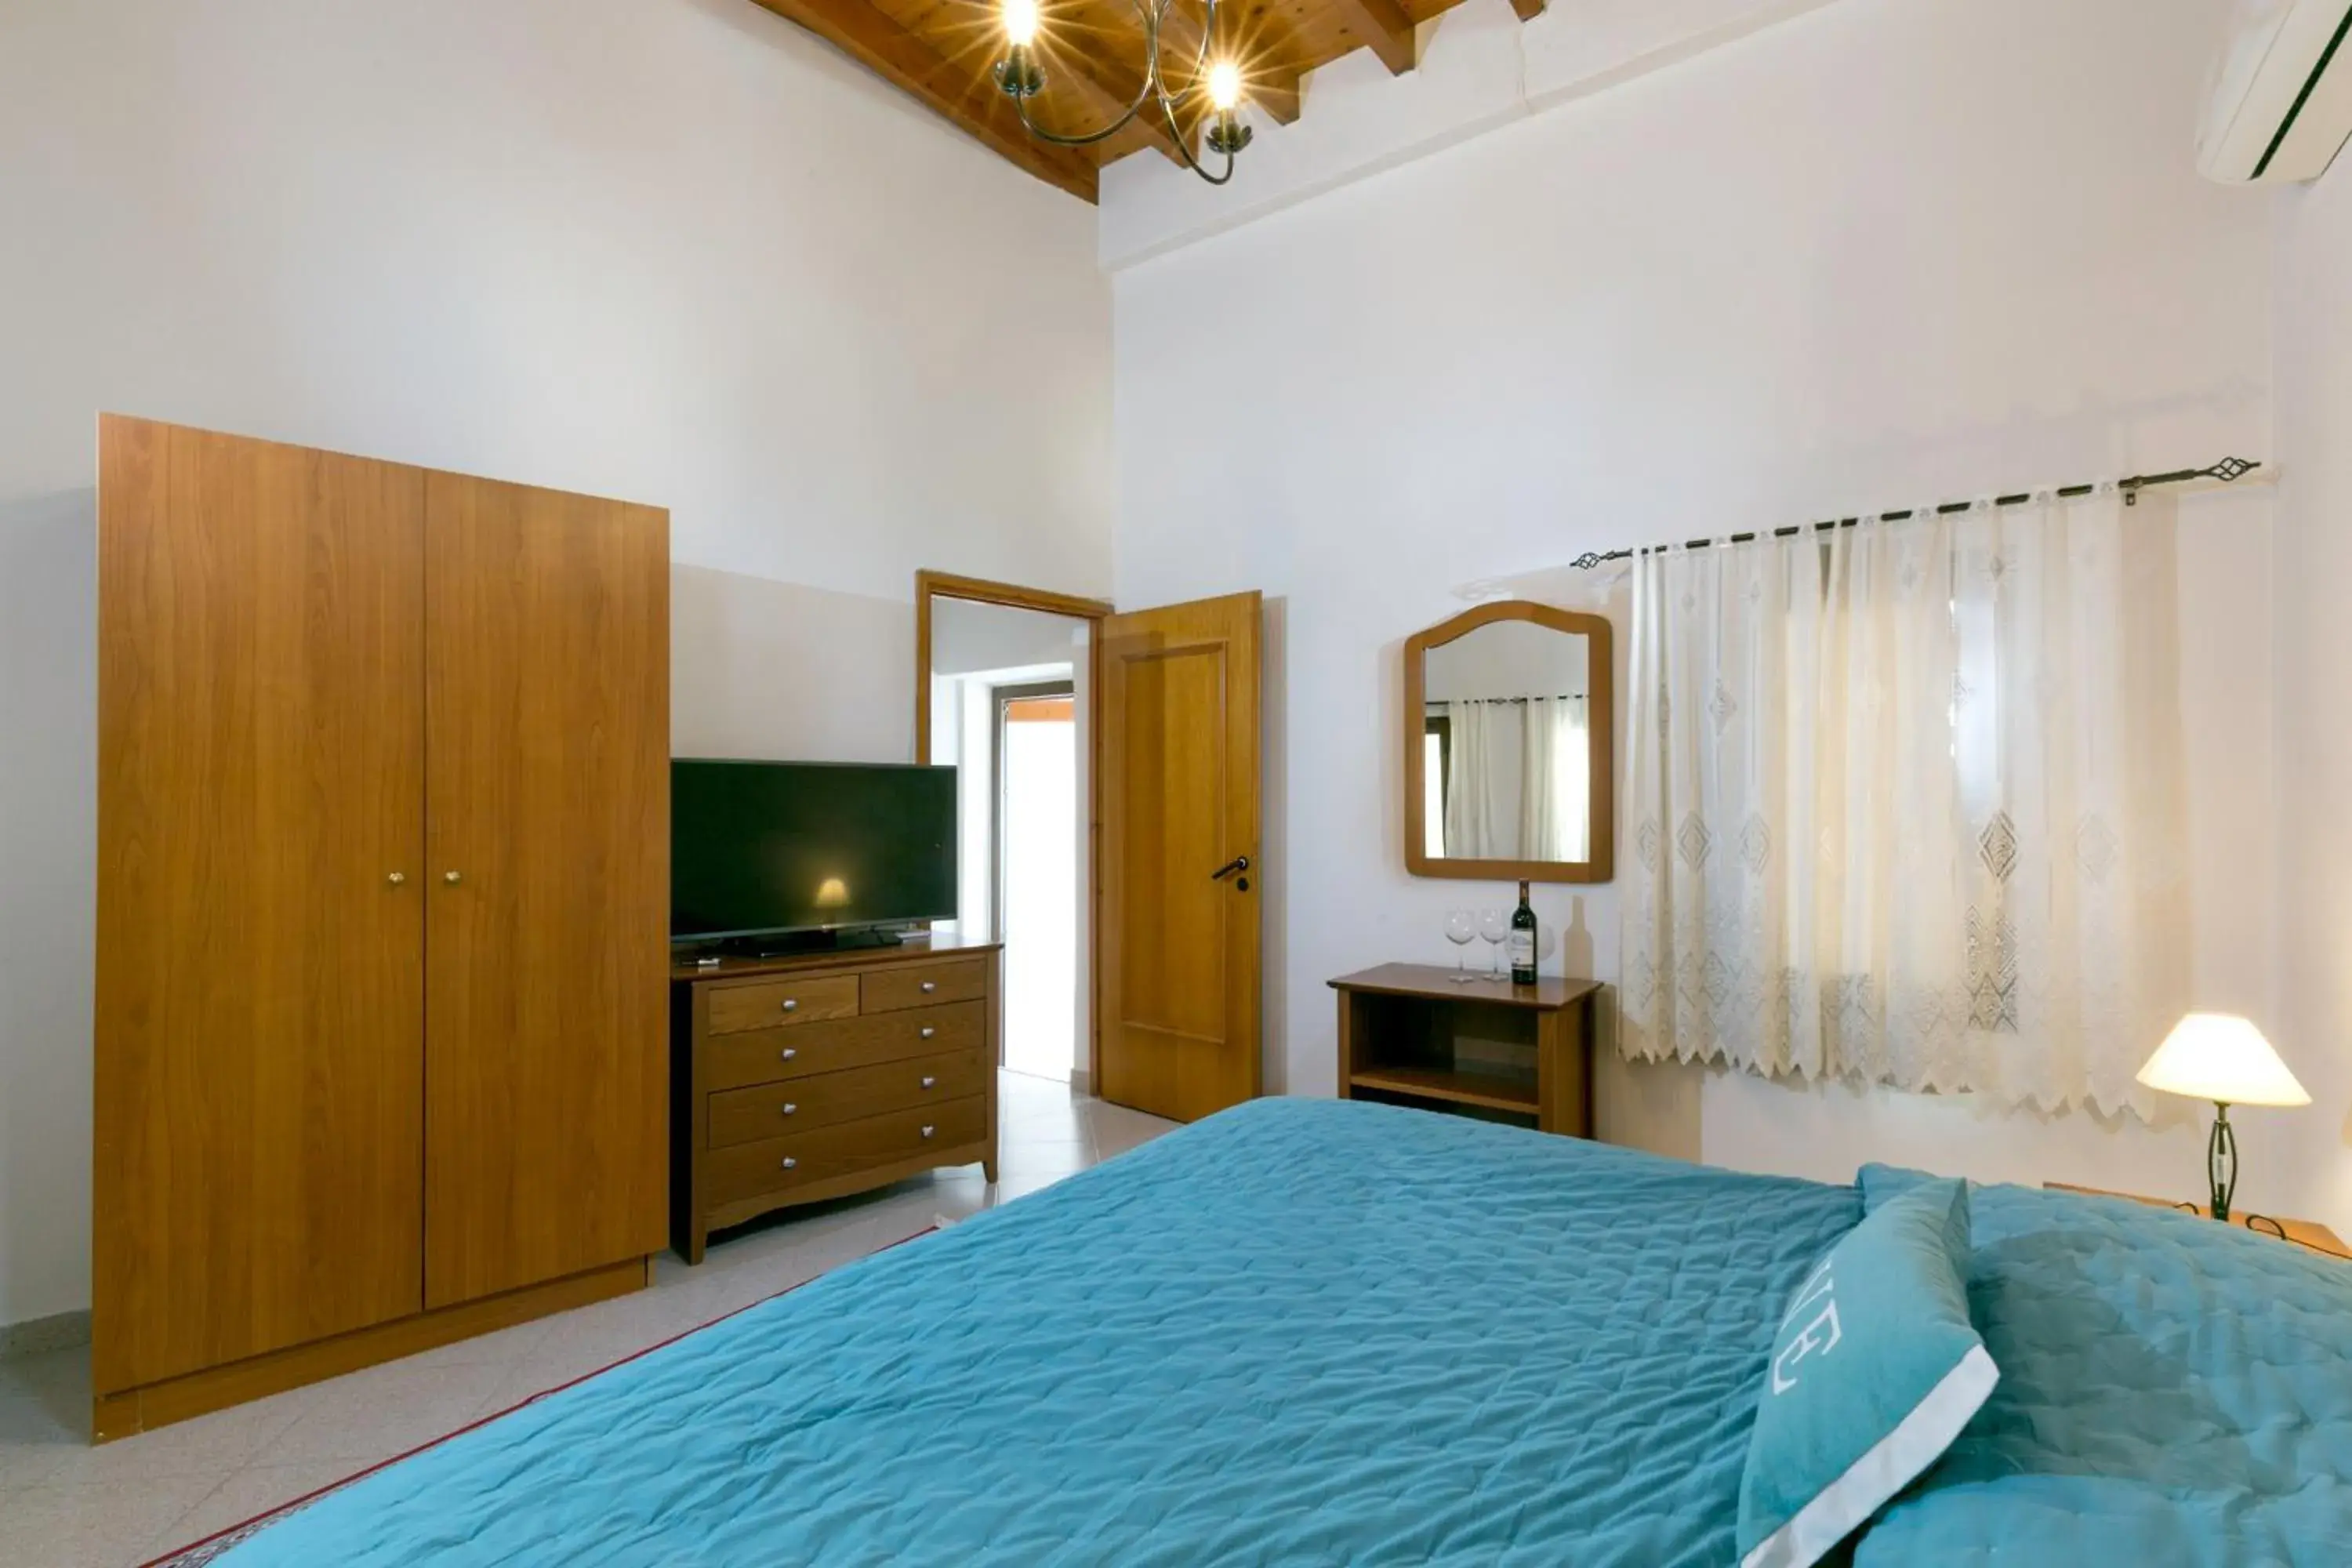 Bedroom, Room Photo in Evdokia Hotel